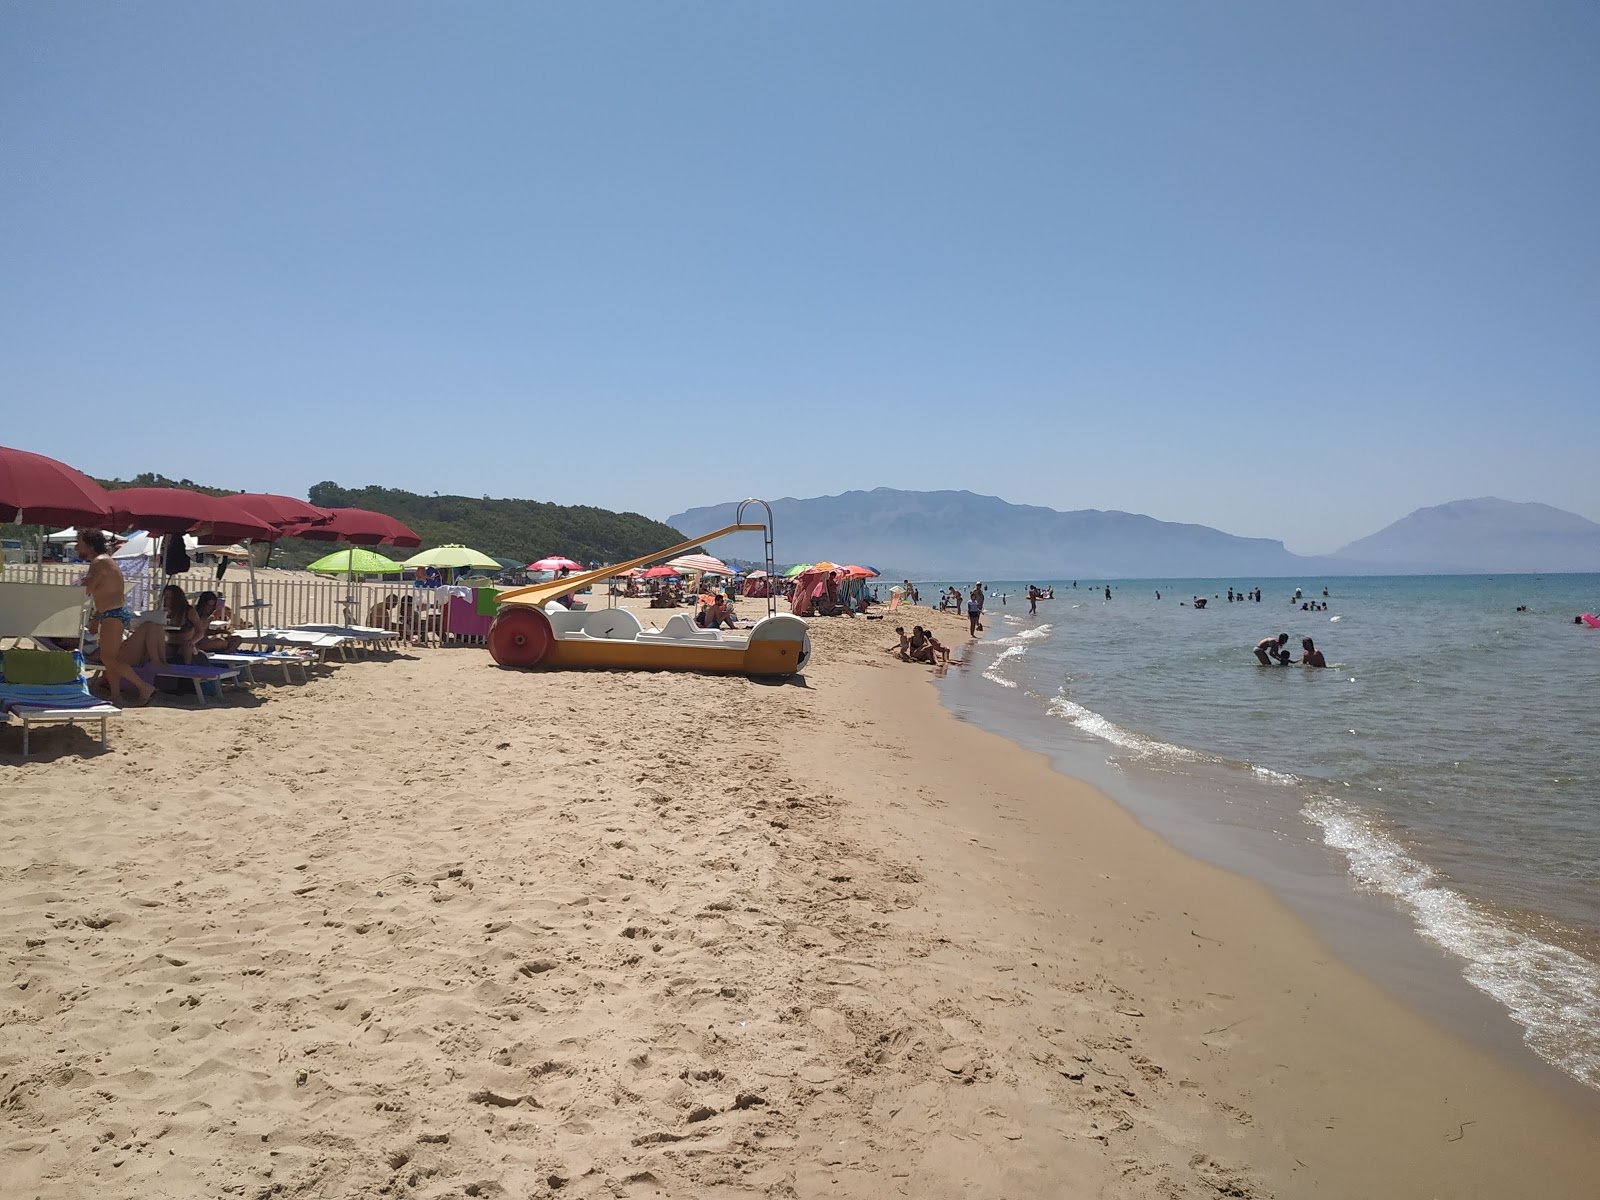 Foto de Spiaggia Di Balestrate - lugar popular entre los conocedores del relax